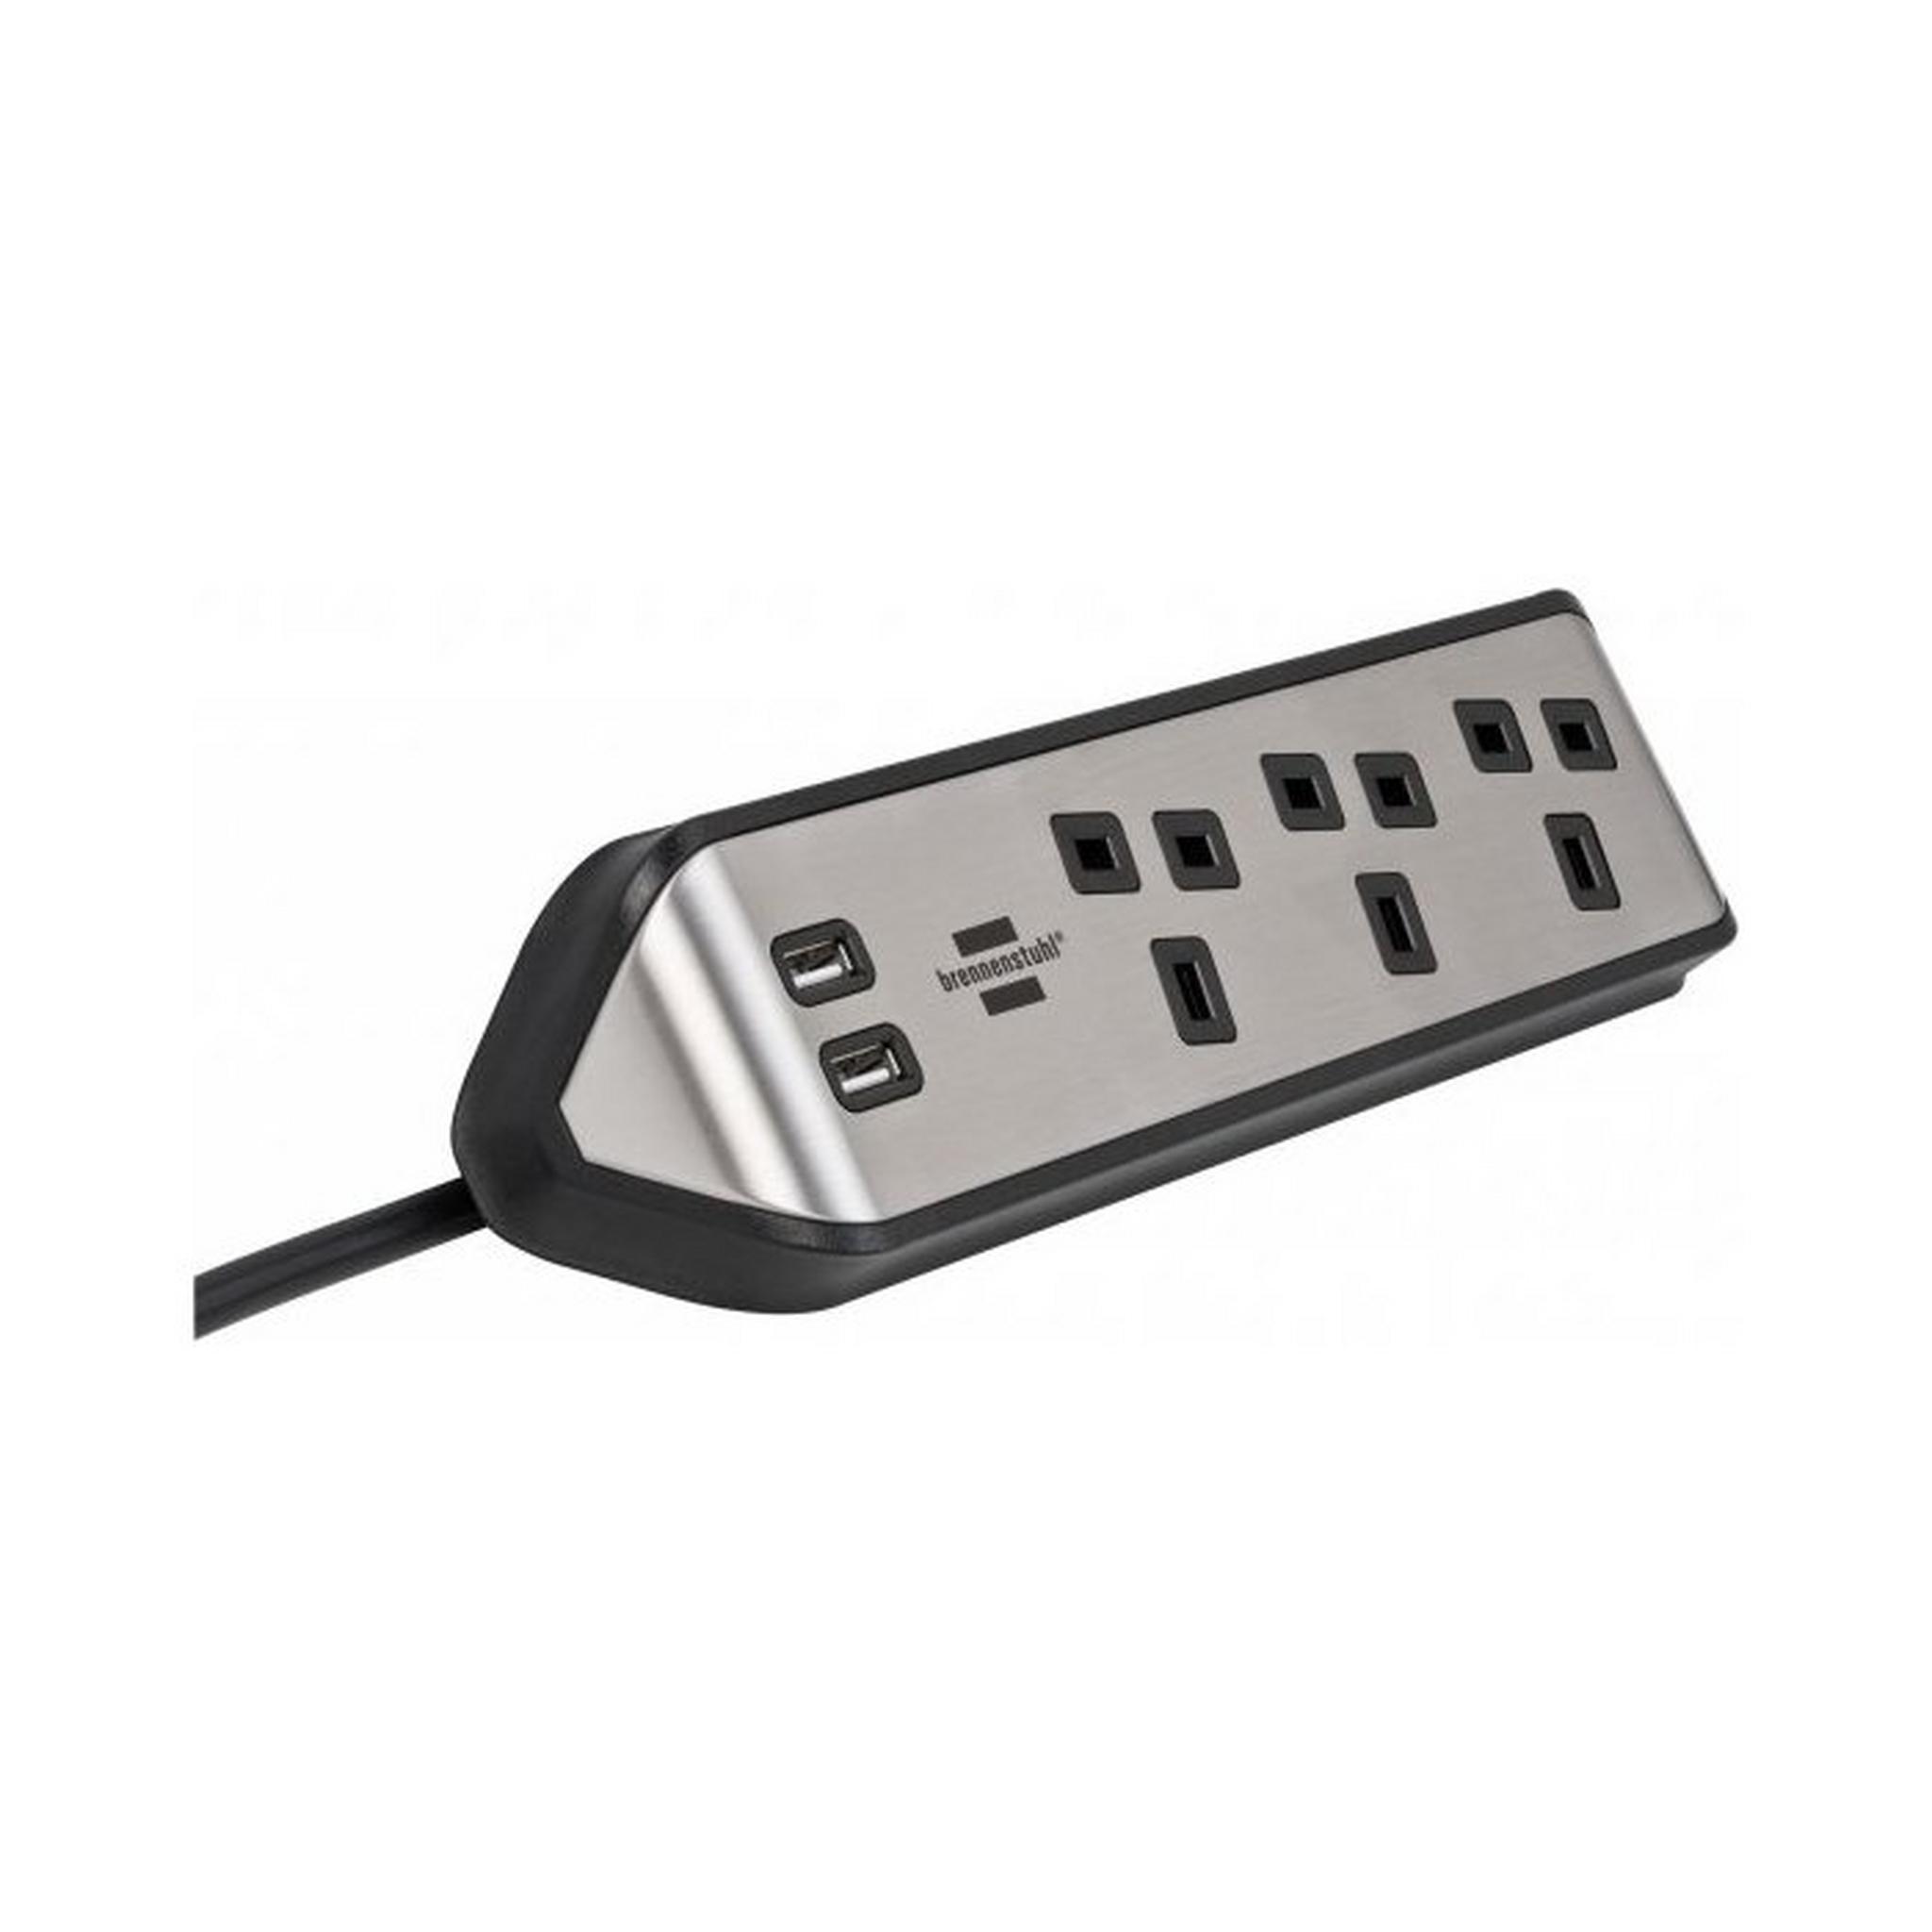 BRENNENSTUHL 3 Sockets Power Extension, 2M, 2 USB Ports, 1153593410 - Silver/ Black